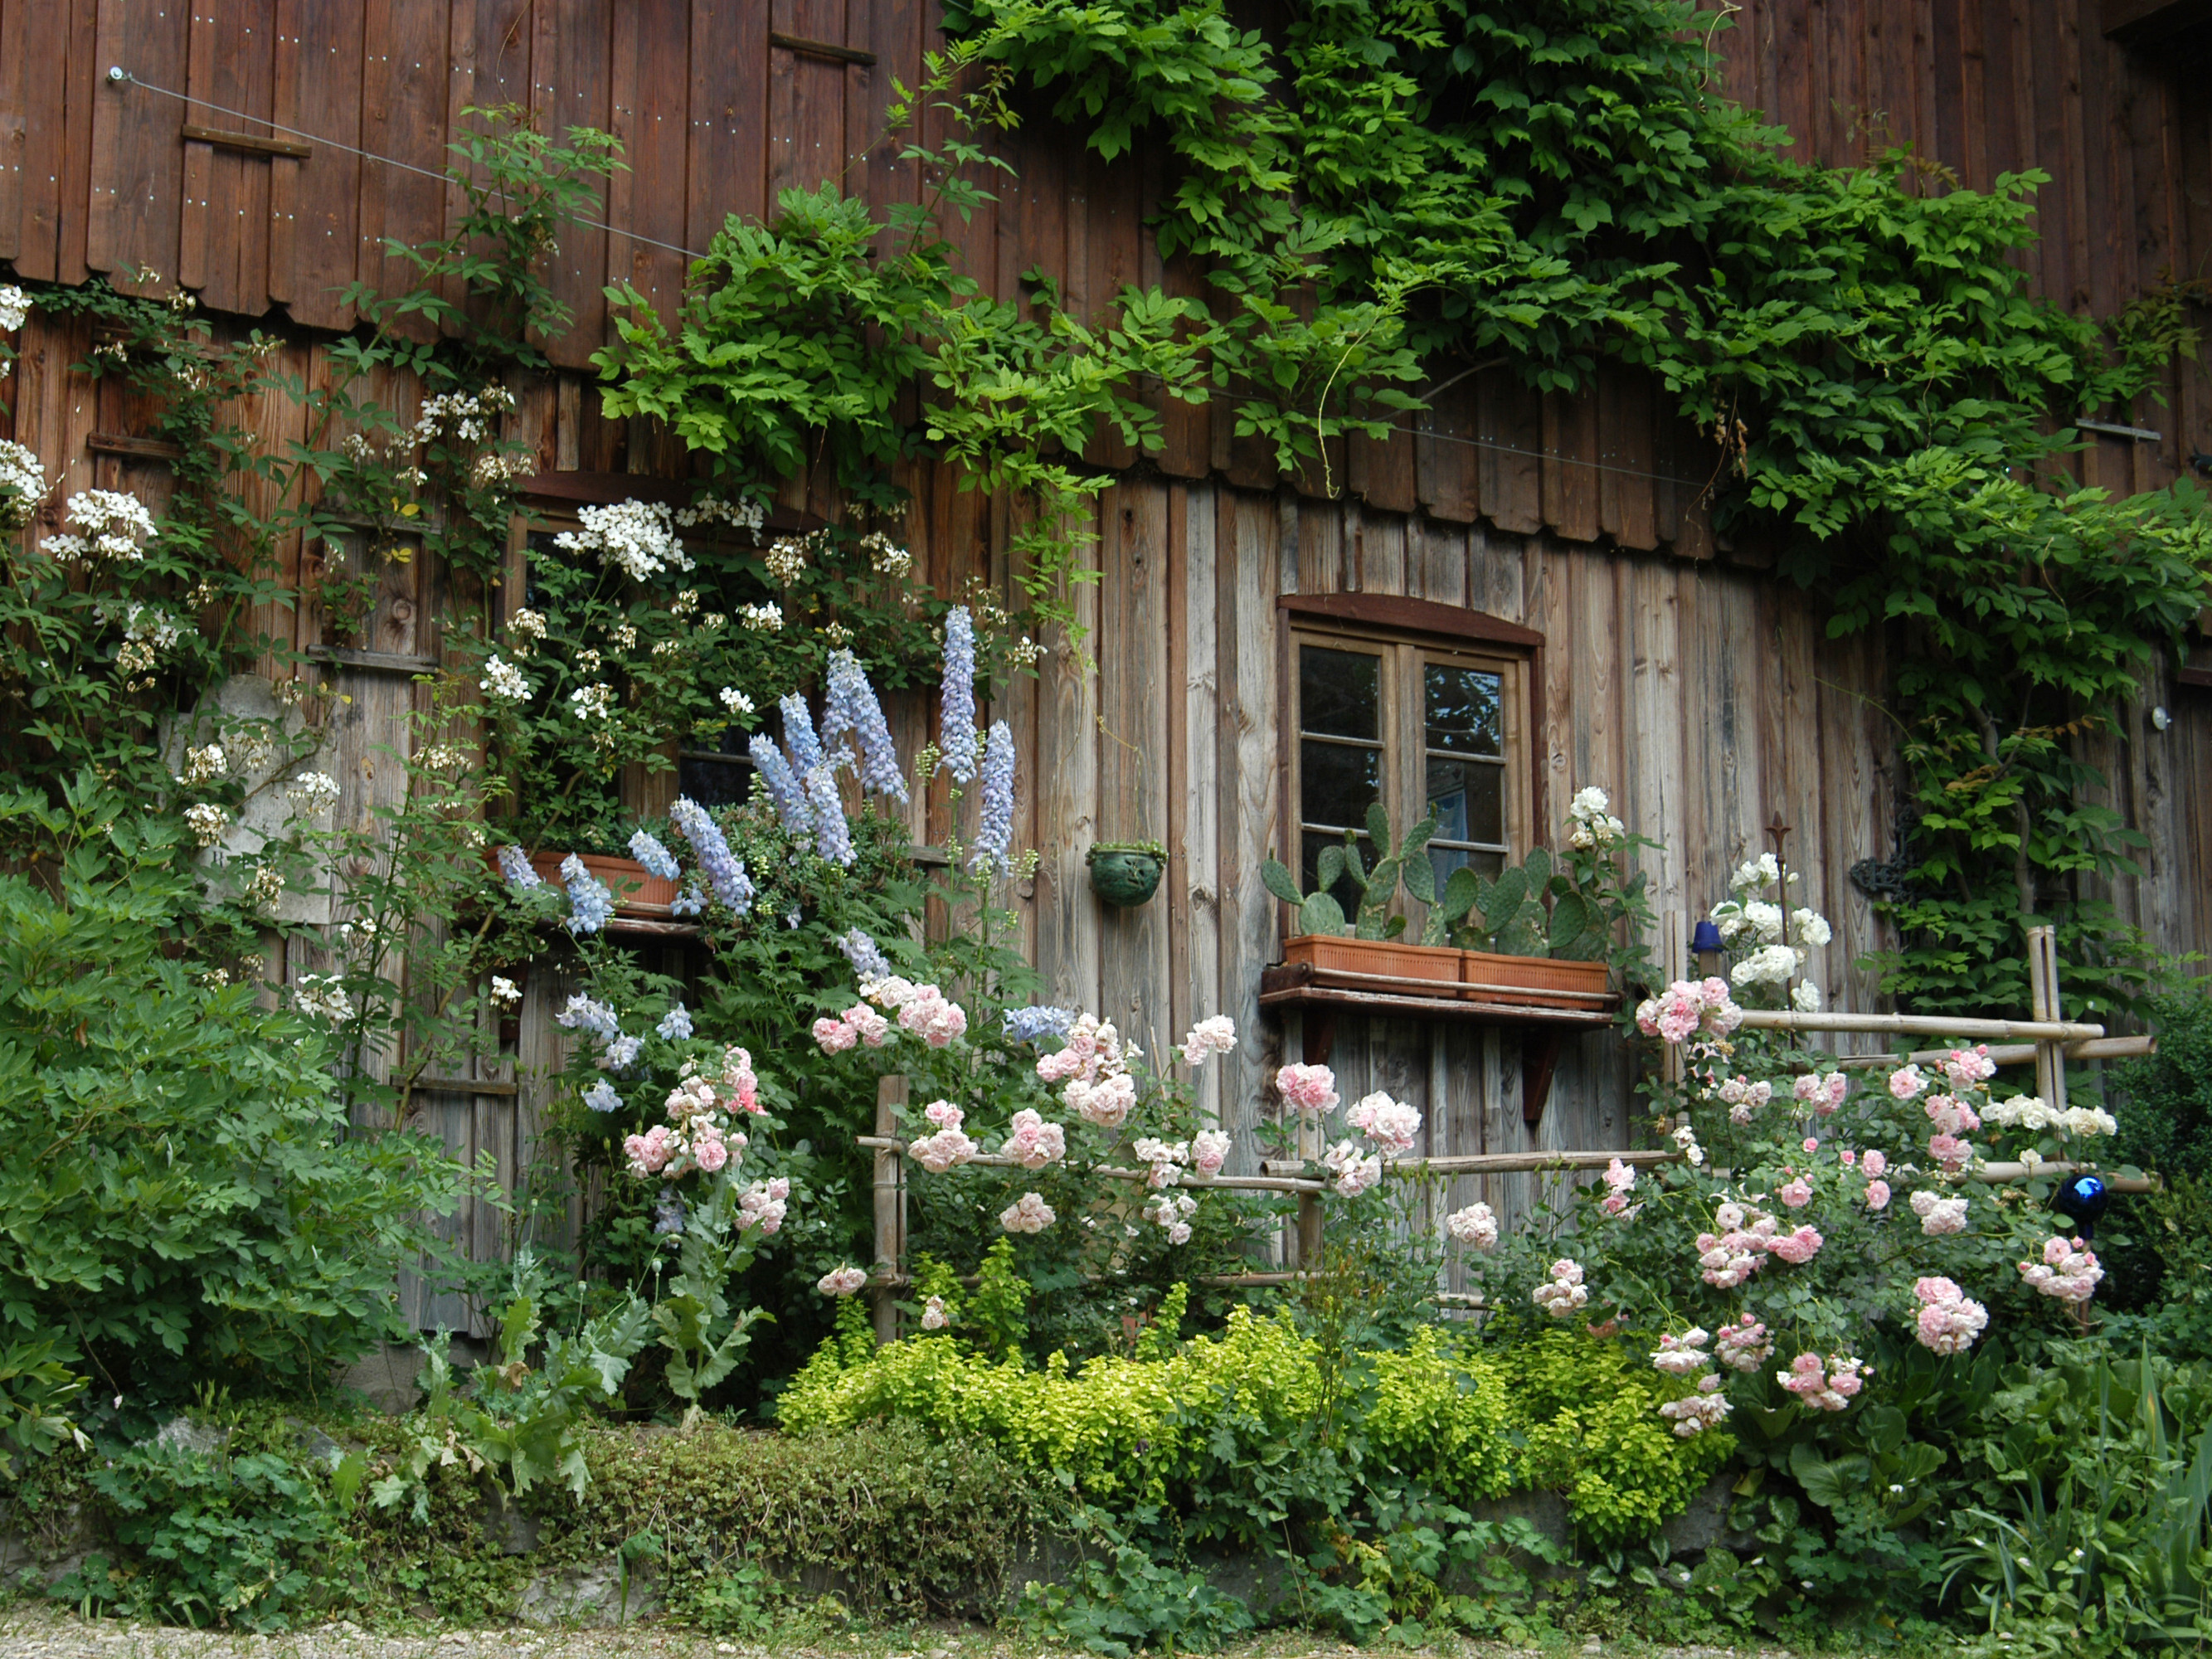  Zugewachsenes Holzhausfassade mit Blumen im Vorgarten - das Bild wird mit Klick vergrößert 